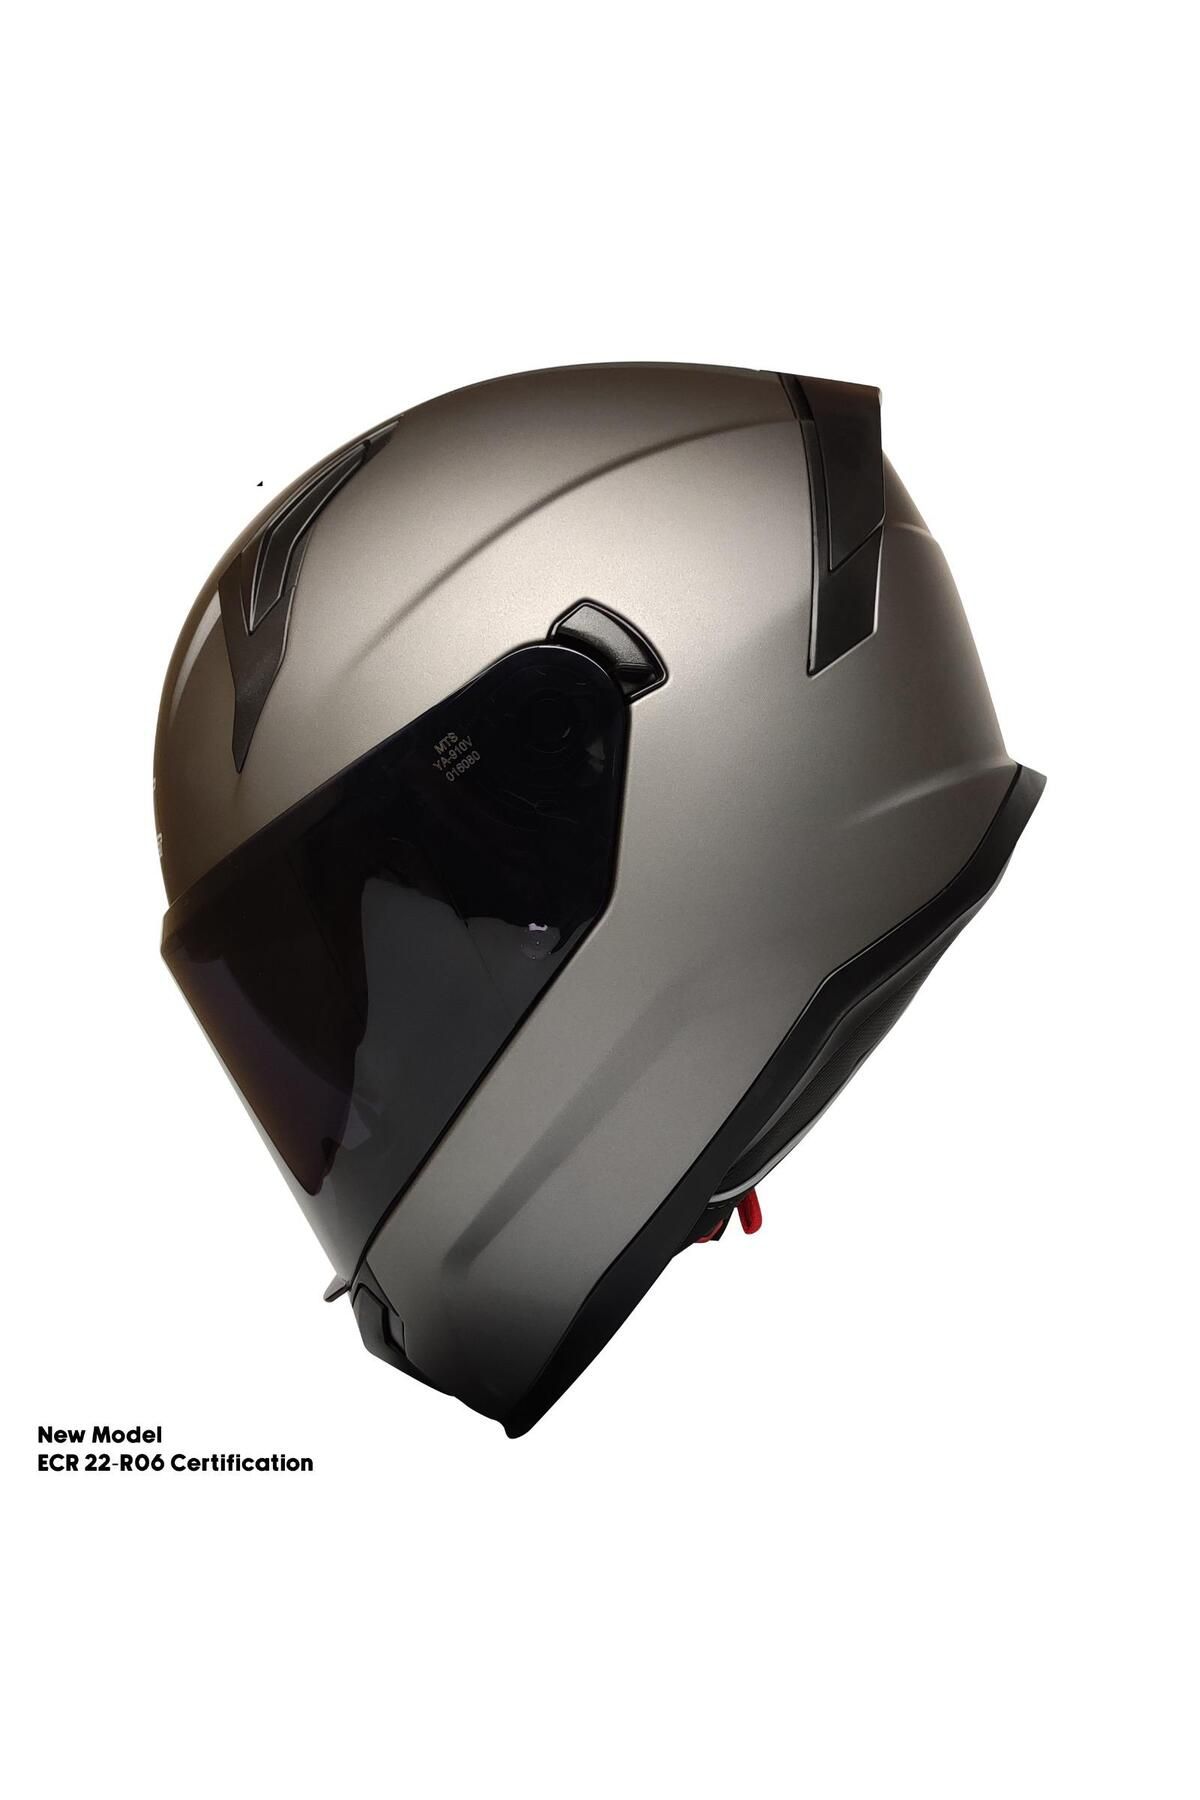 MOTOANL Motosiklet Kask Ece 22.R06 Sertifikalı Güneş Vizörlü Fiber Kask Full Face Motor Kaskı Yeni Sezon